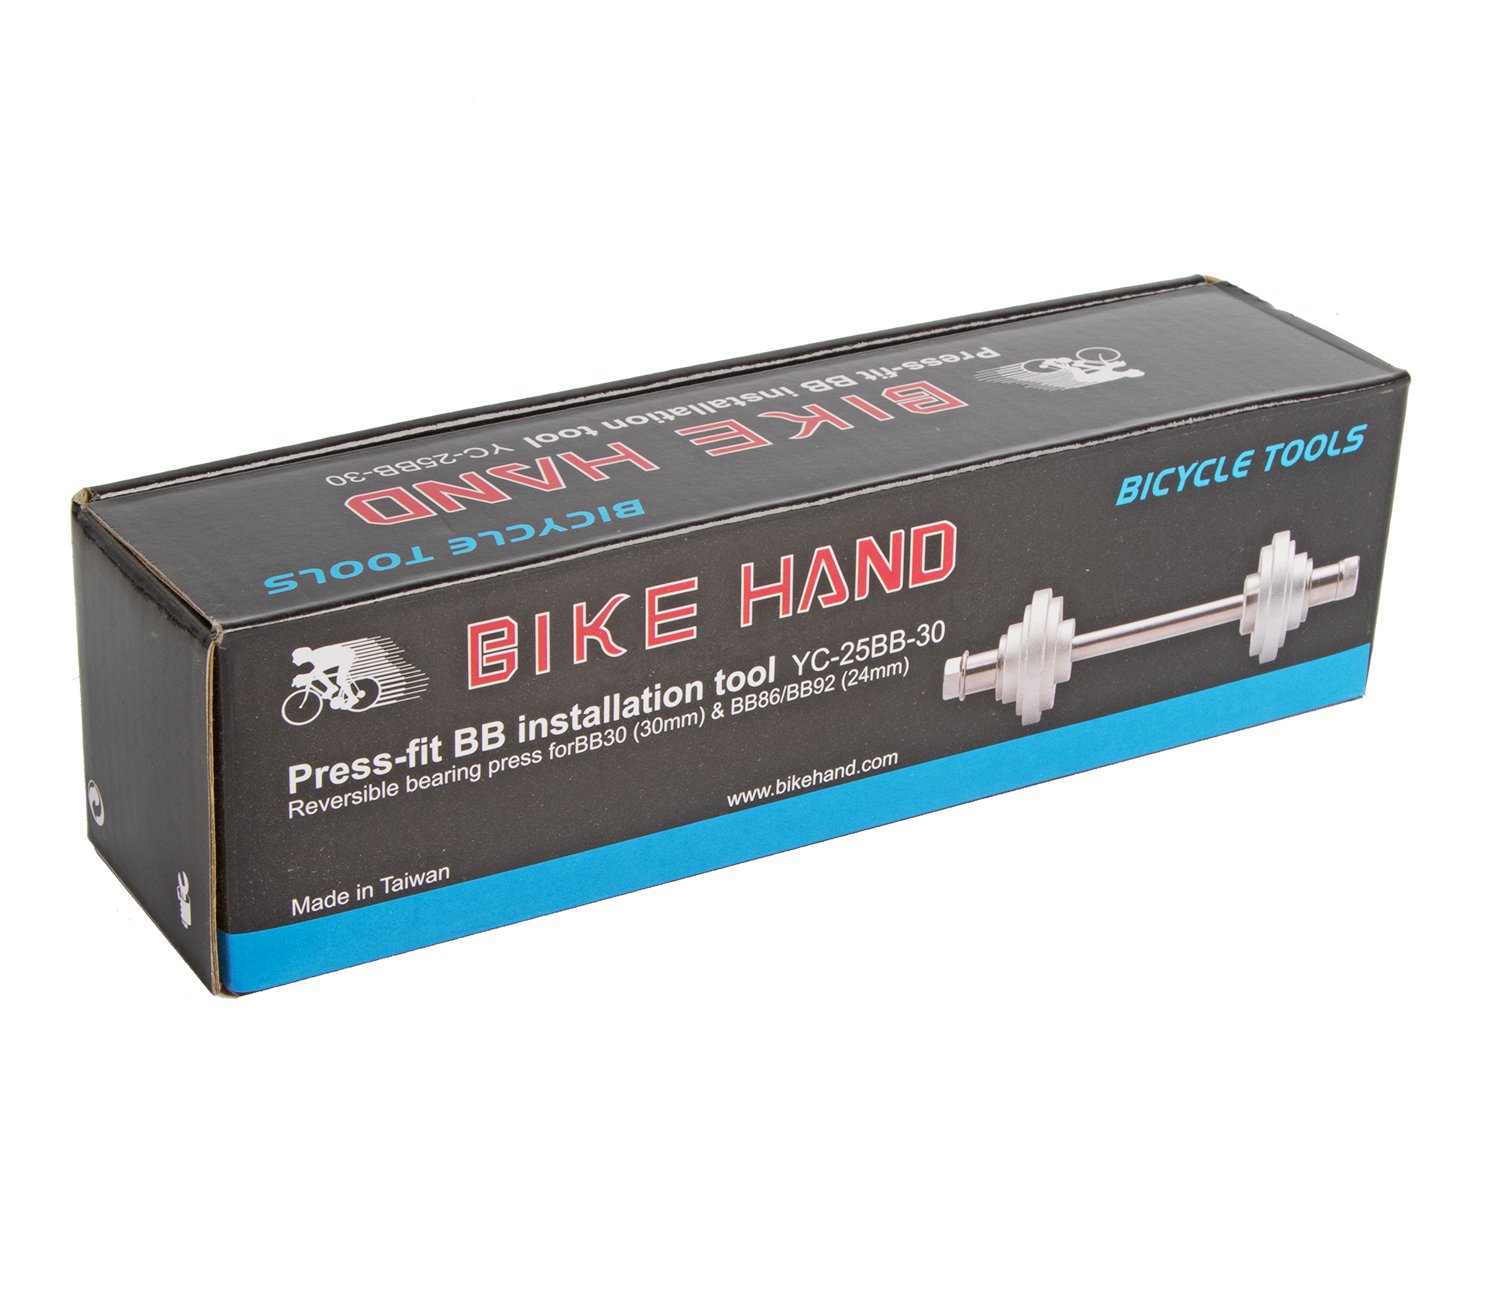 Инструмент BIKE HAND, для установки каретки Shimano Press fit, подшипников каретки BB30, 24-мм подши